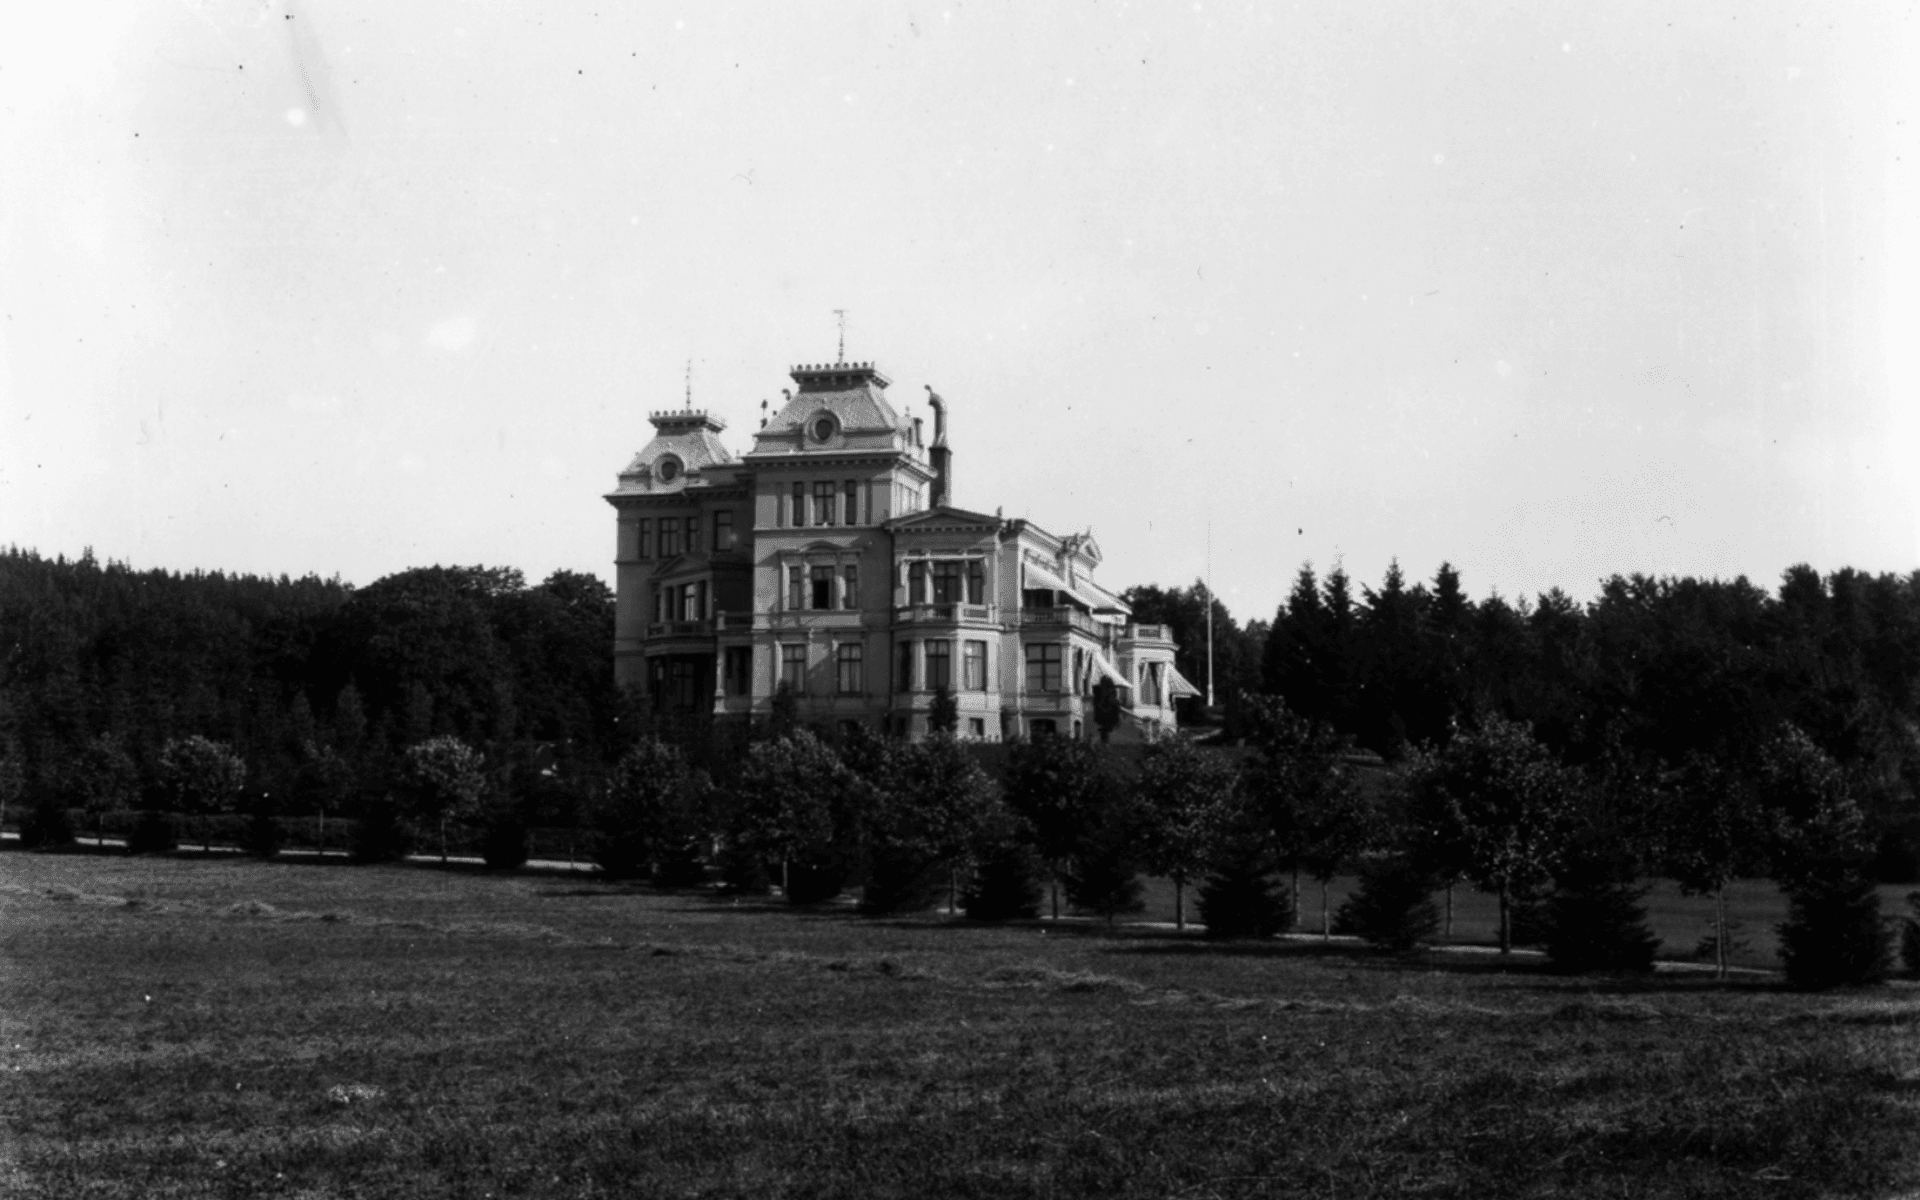 Vikaryd slott, beläget nära sjön Mjörn och väster om det gamla Vikaryd. Ägdes och beboddes av familjen Dickson. Uppfört 1885-1886 och revs 1946. Fotografering - 1900 — 1910.